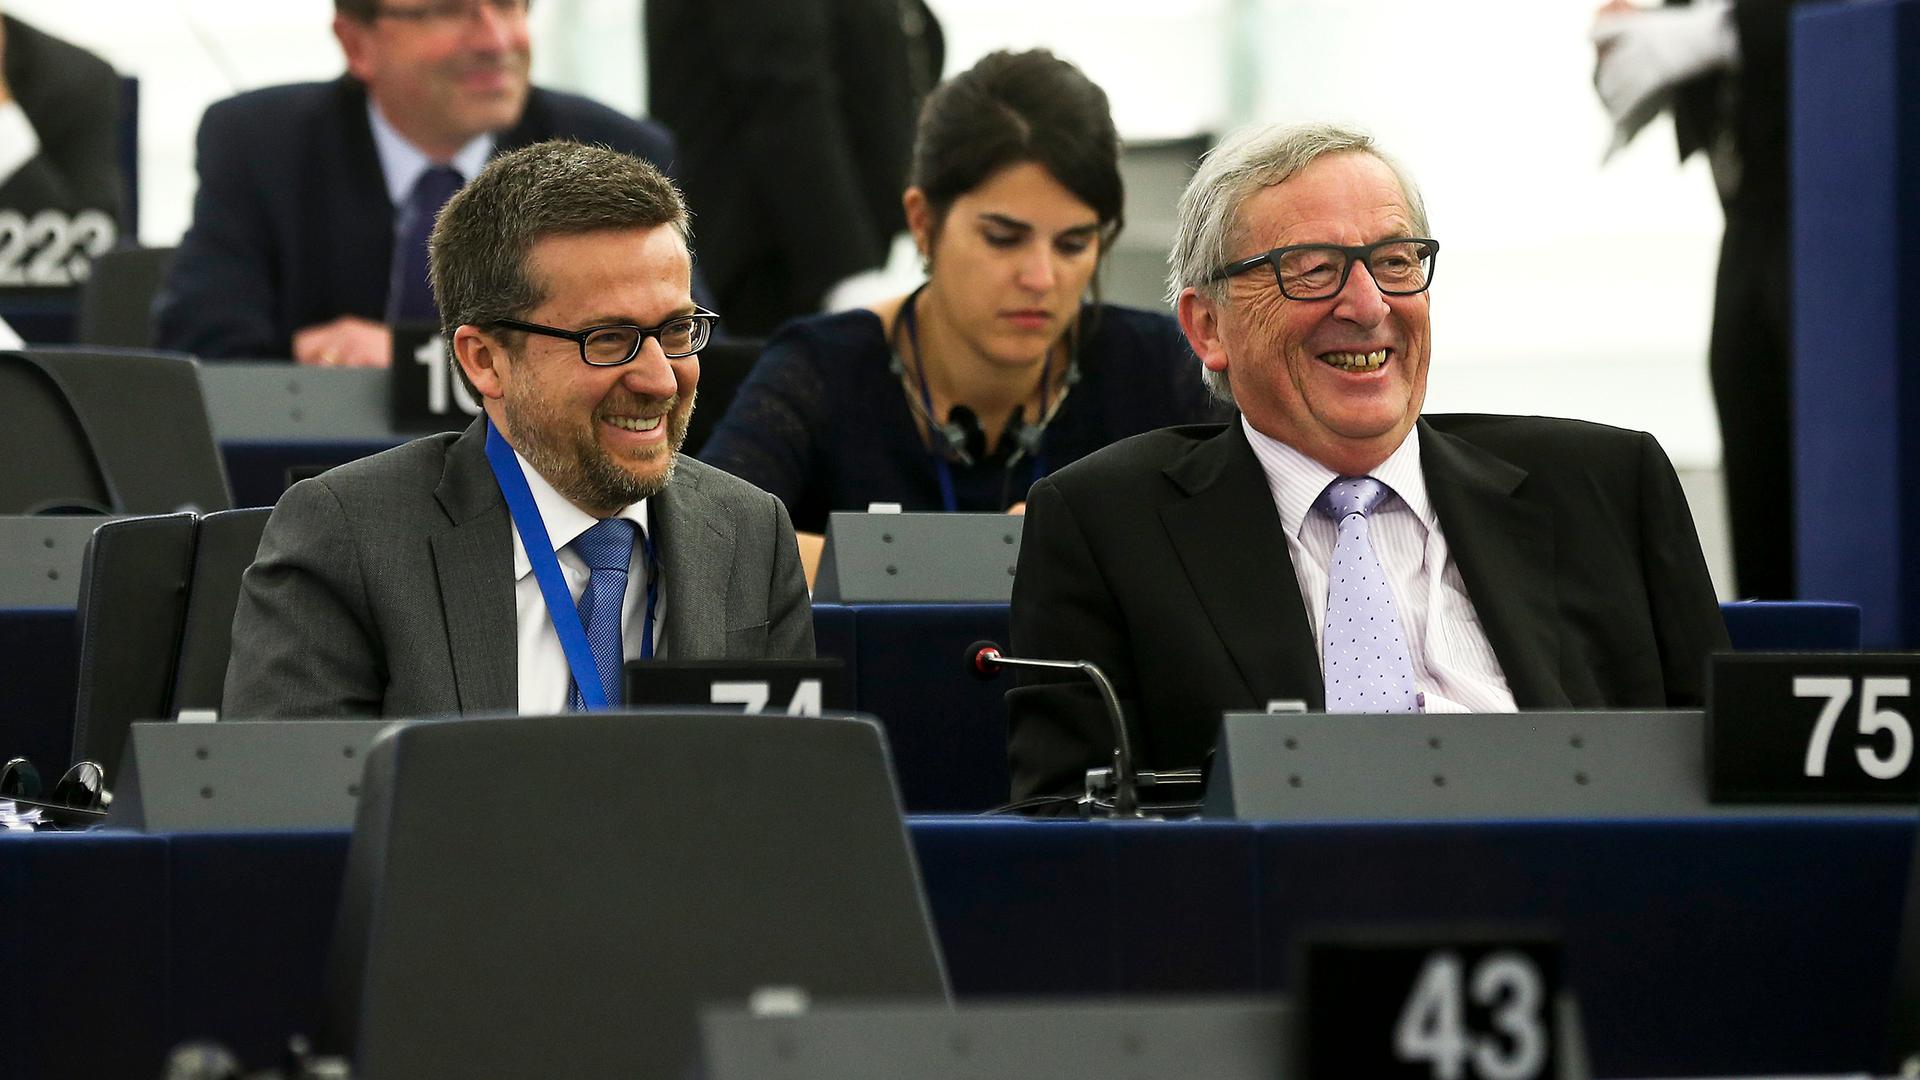 O antigo presidente da Comissão Europeia, Jean-Claude Juncker (D), acompanhado pelo seu então Comissário para a Investigação, Ciência e Inovação, Carlos Moedas (E), momentos antes do discurso do Presidente da República de Portugal, Marcelo Rebelo de Sousa, no Parlamento Europeu em Estrasburgo, França, 13 de abril de 2016.